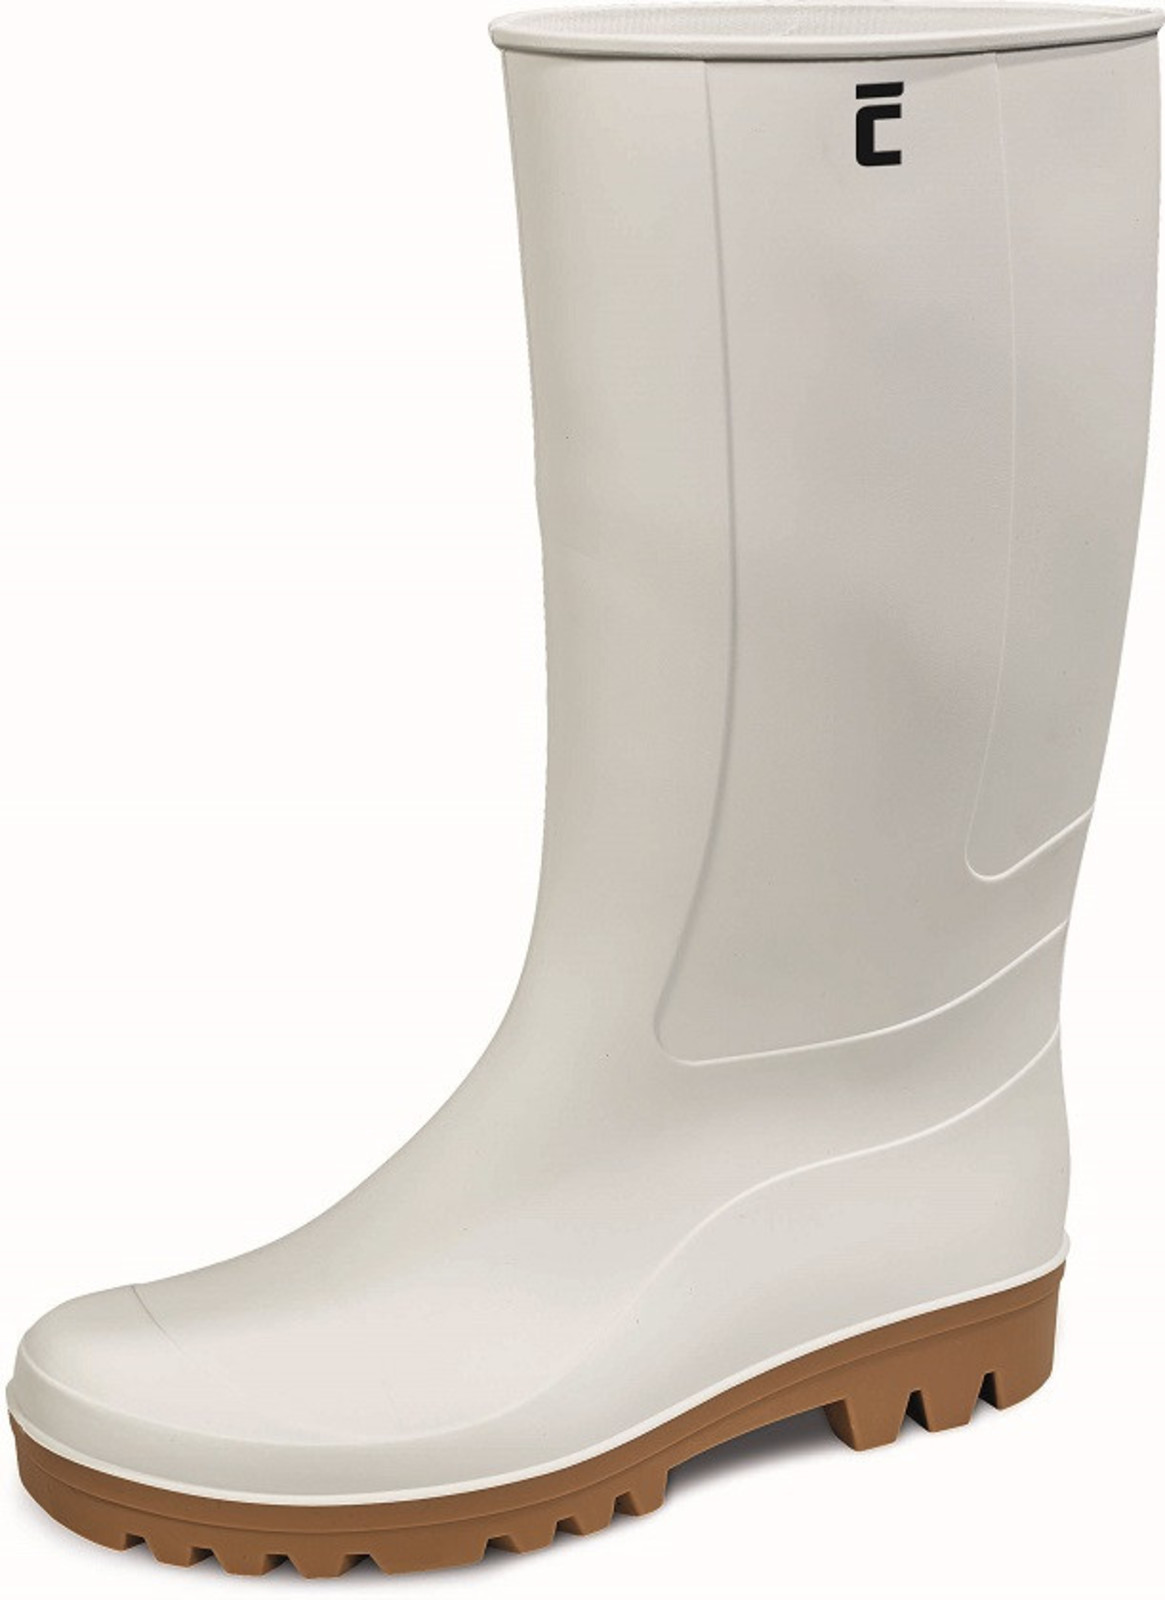 Gumáky Boots BC Food O4  - veľkosť: 37, farba: biela